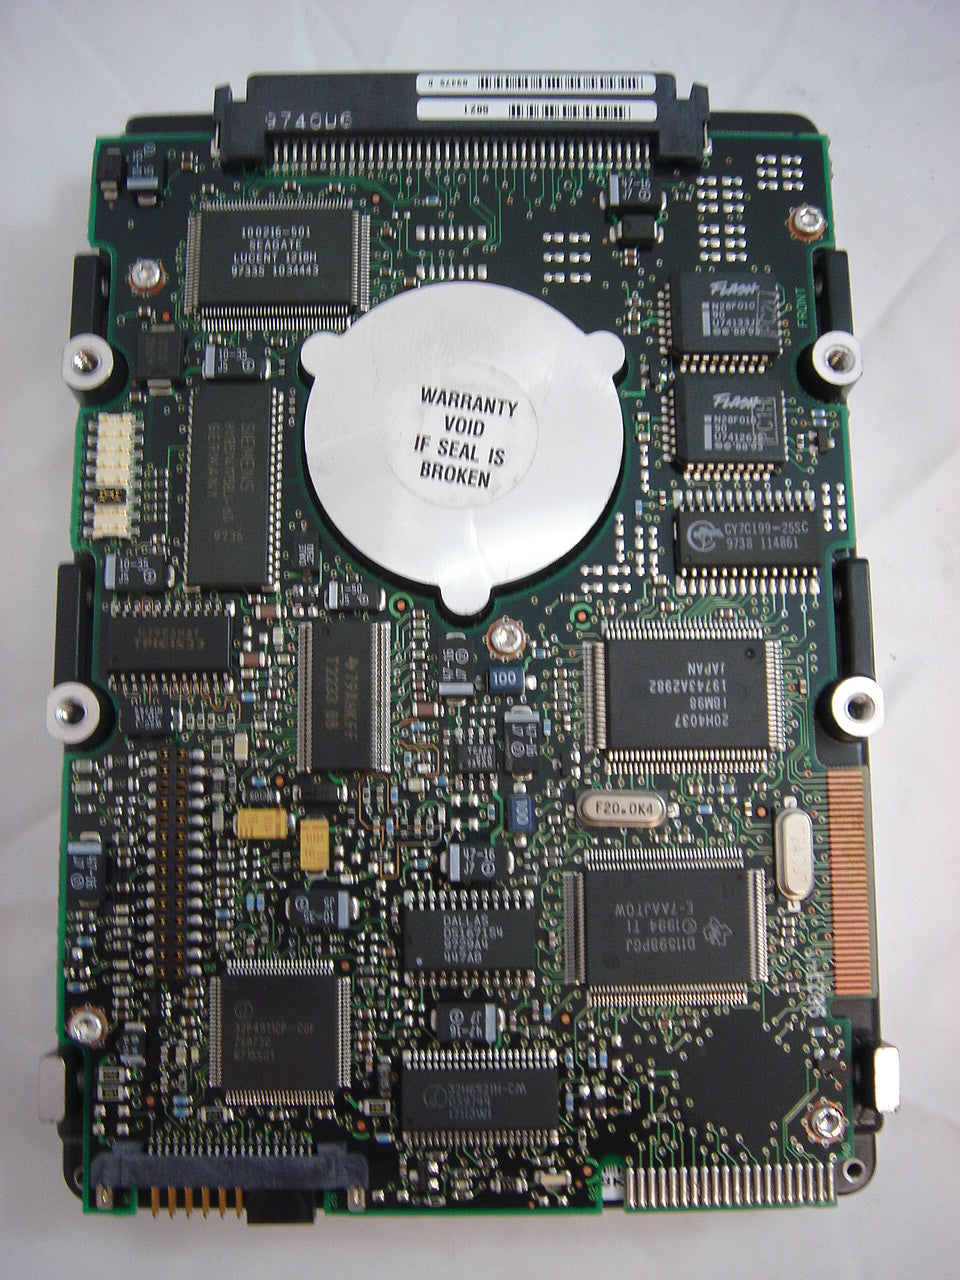 9J6003-037 - Seagate 4.5GB SCSI3 HDD - 80pin - 7200rpm - 512Kb - 3.5" - Refurbished